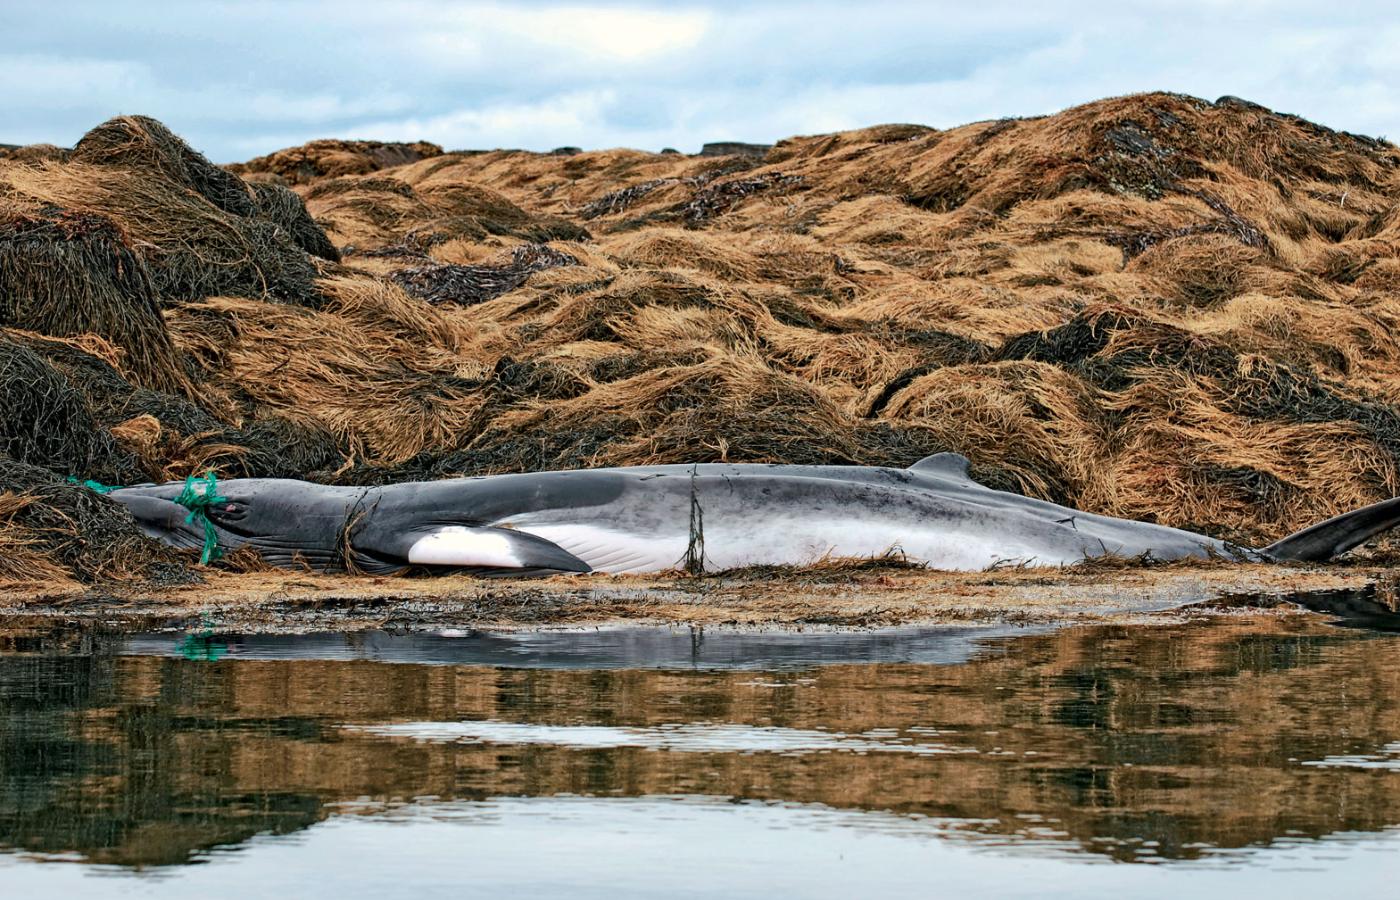 Wieloryb wplątany w sieć rybacką, wyrzucony na brzeg w okolicach Maine.